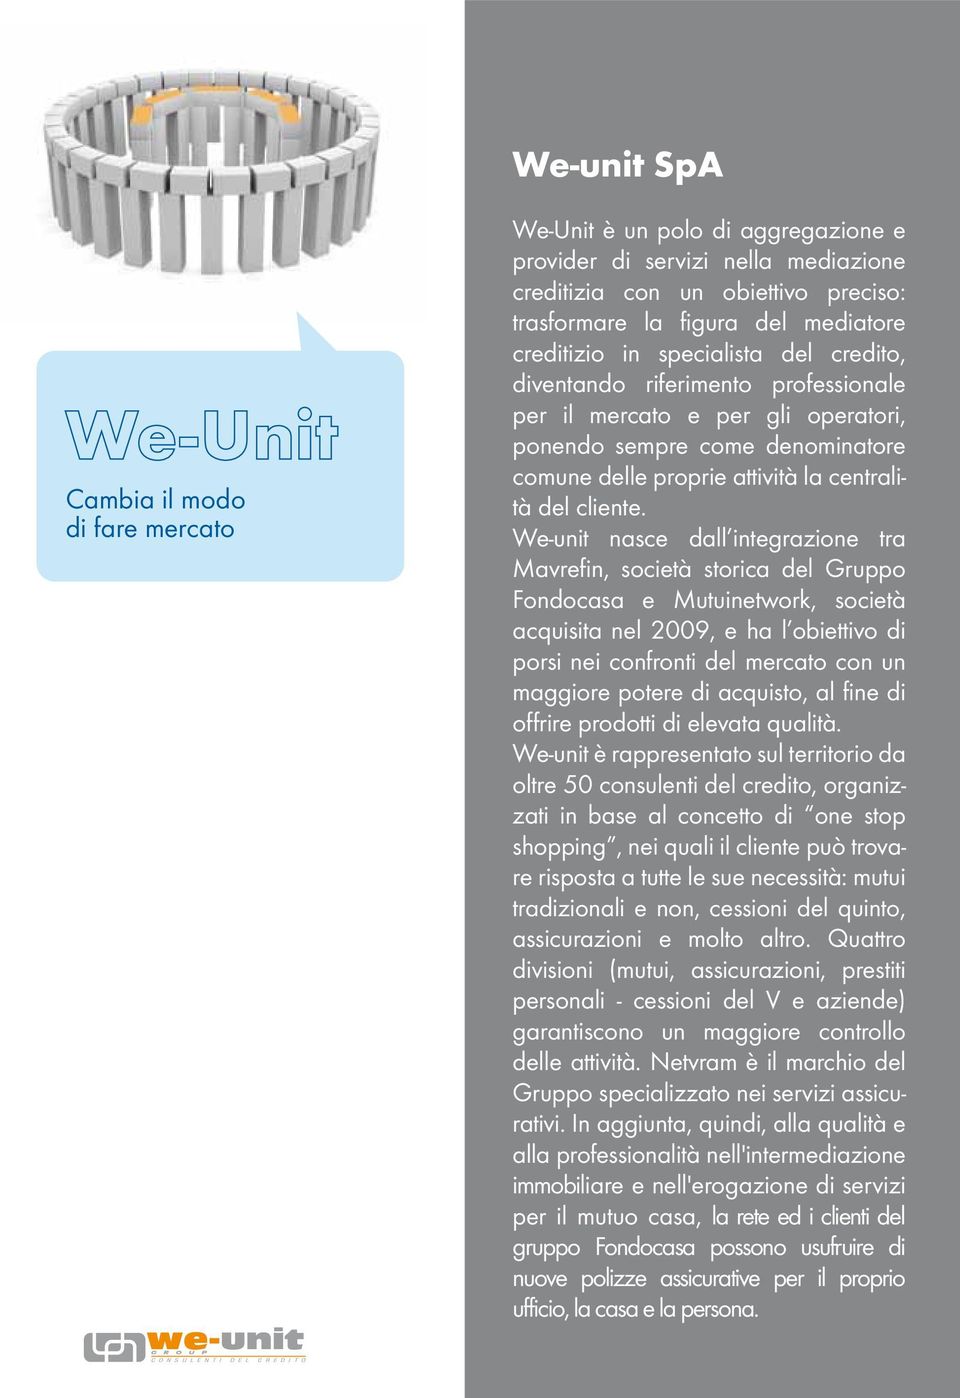 We-unit nasce dall integrazione tra Mavrefin, società storica del Gruppo Fondocasa e Mutuinetwork, società acquisita nel 2009, e ha l obiettivo di porsi nei confronti del mercato con un maggiore